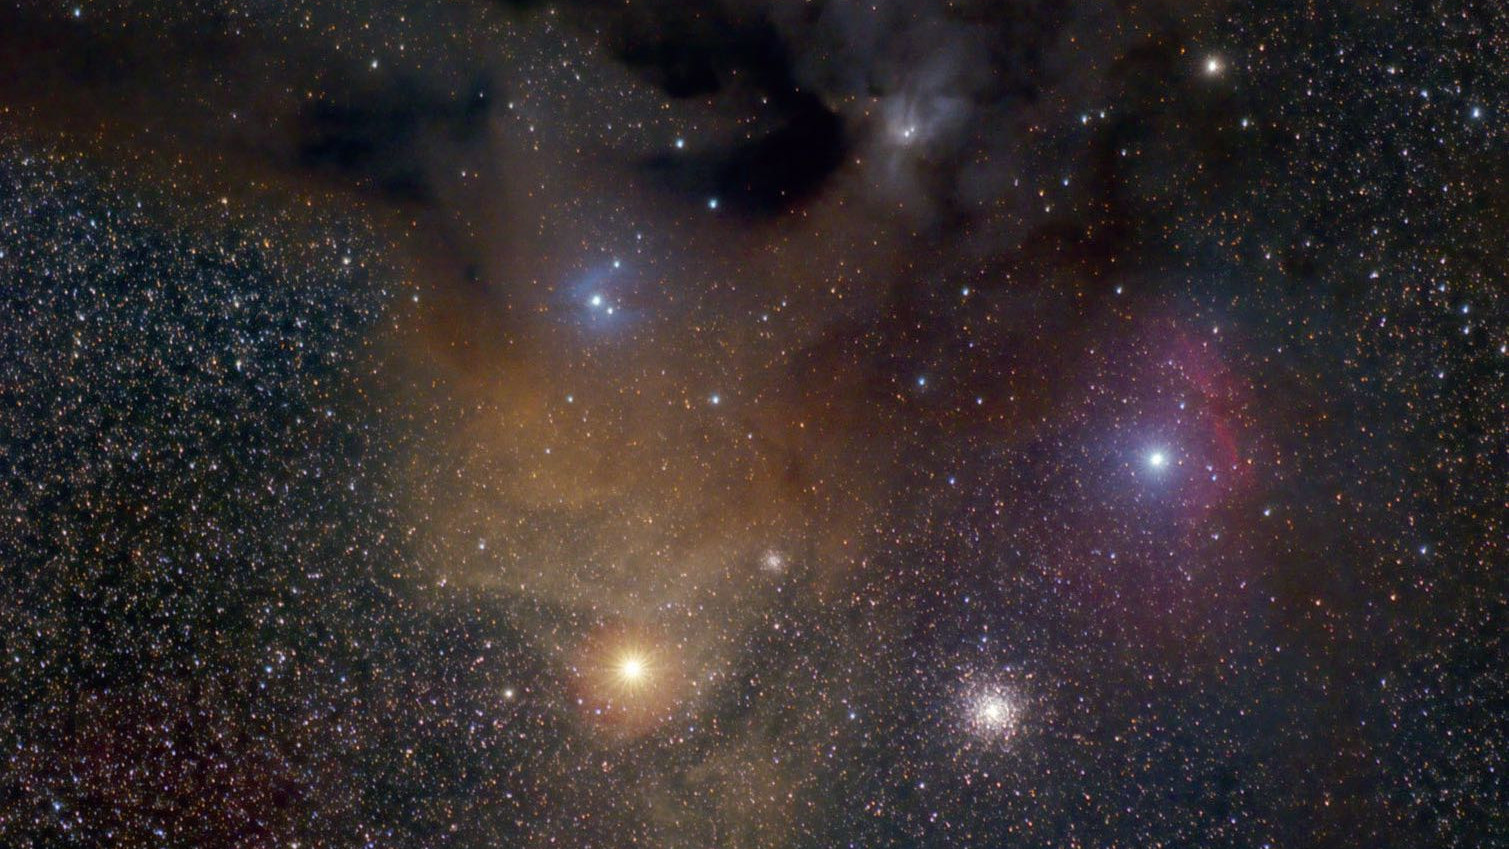 La colorida nebulosa de Rho Ophiuchi y su entorno: Antares es la estrella naranja brillante debajo de la nebulosa, con el cúmulo globular M4 a su derecha. Jim Thommes